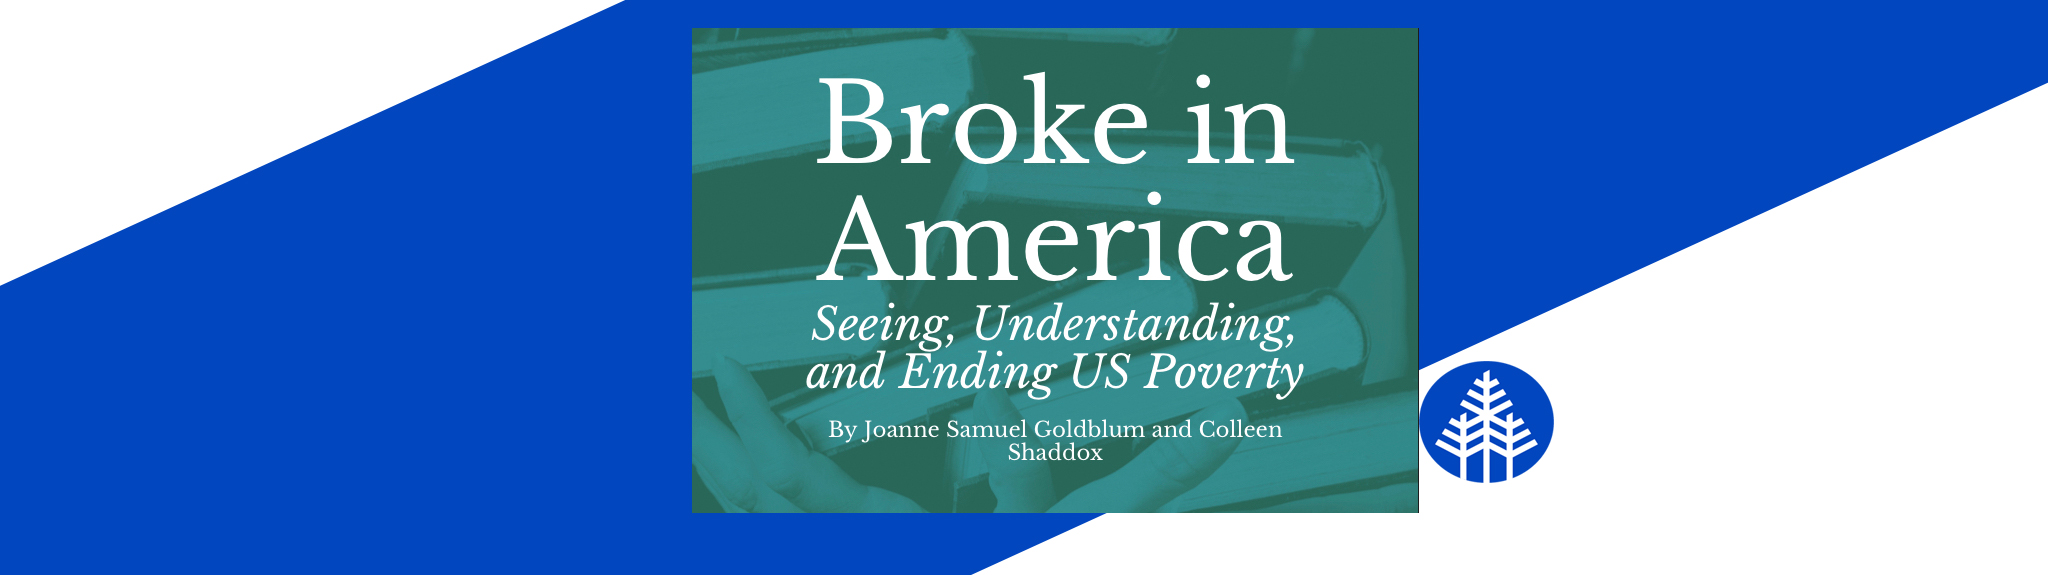 Broke in America book talk